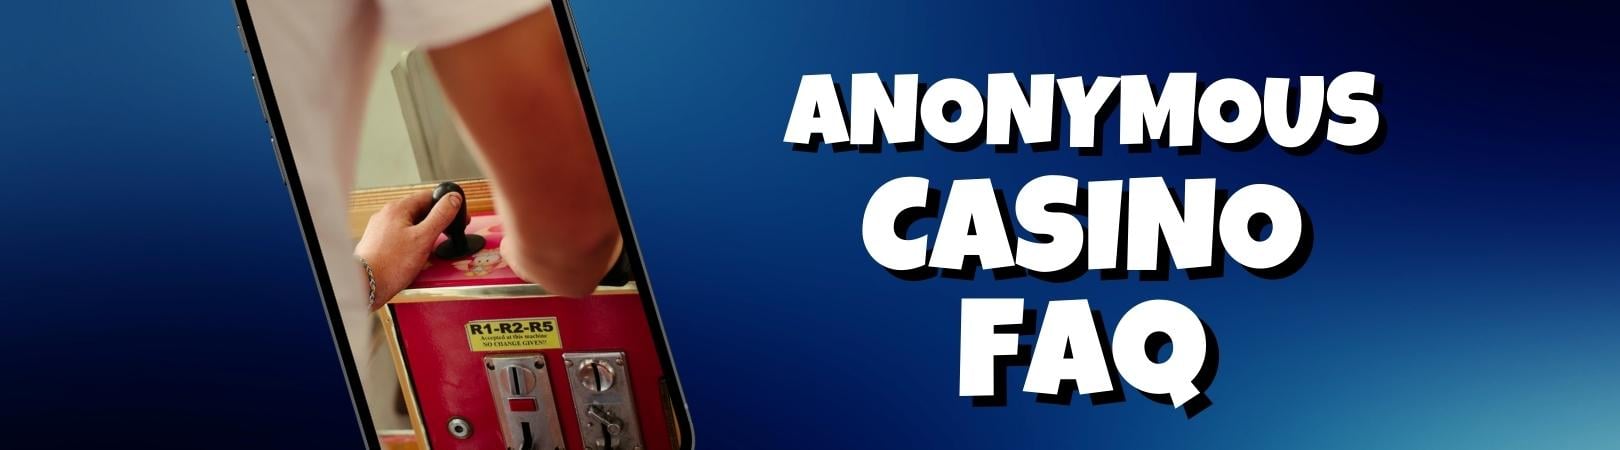 Anonymous casino FAQ img